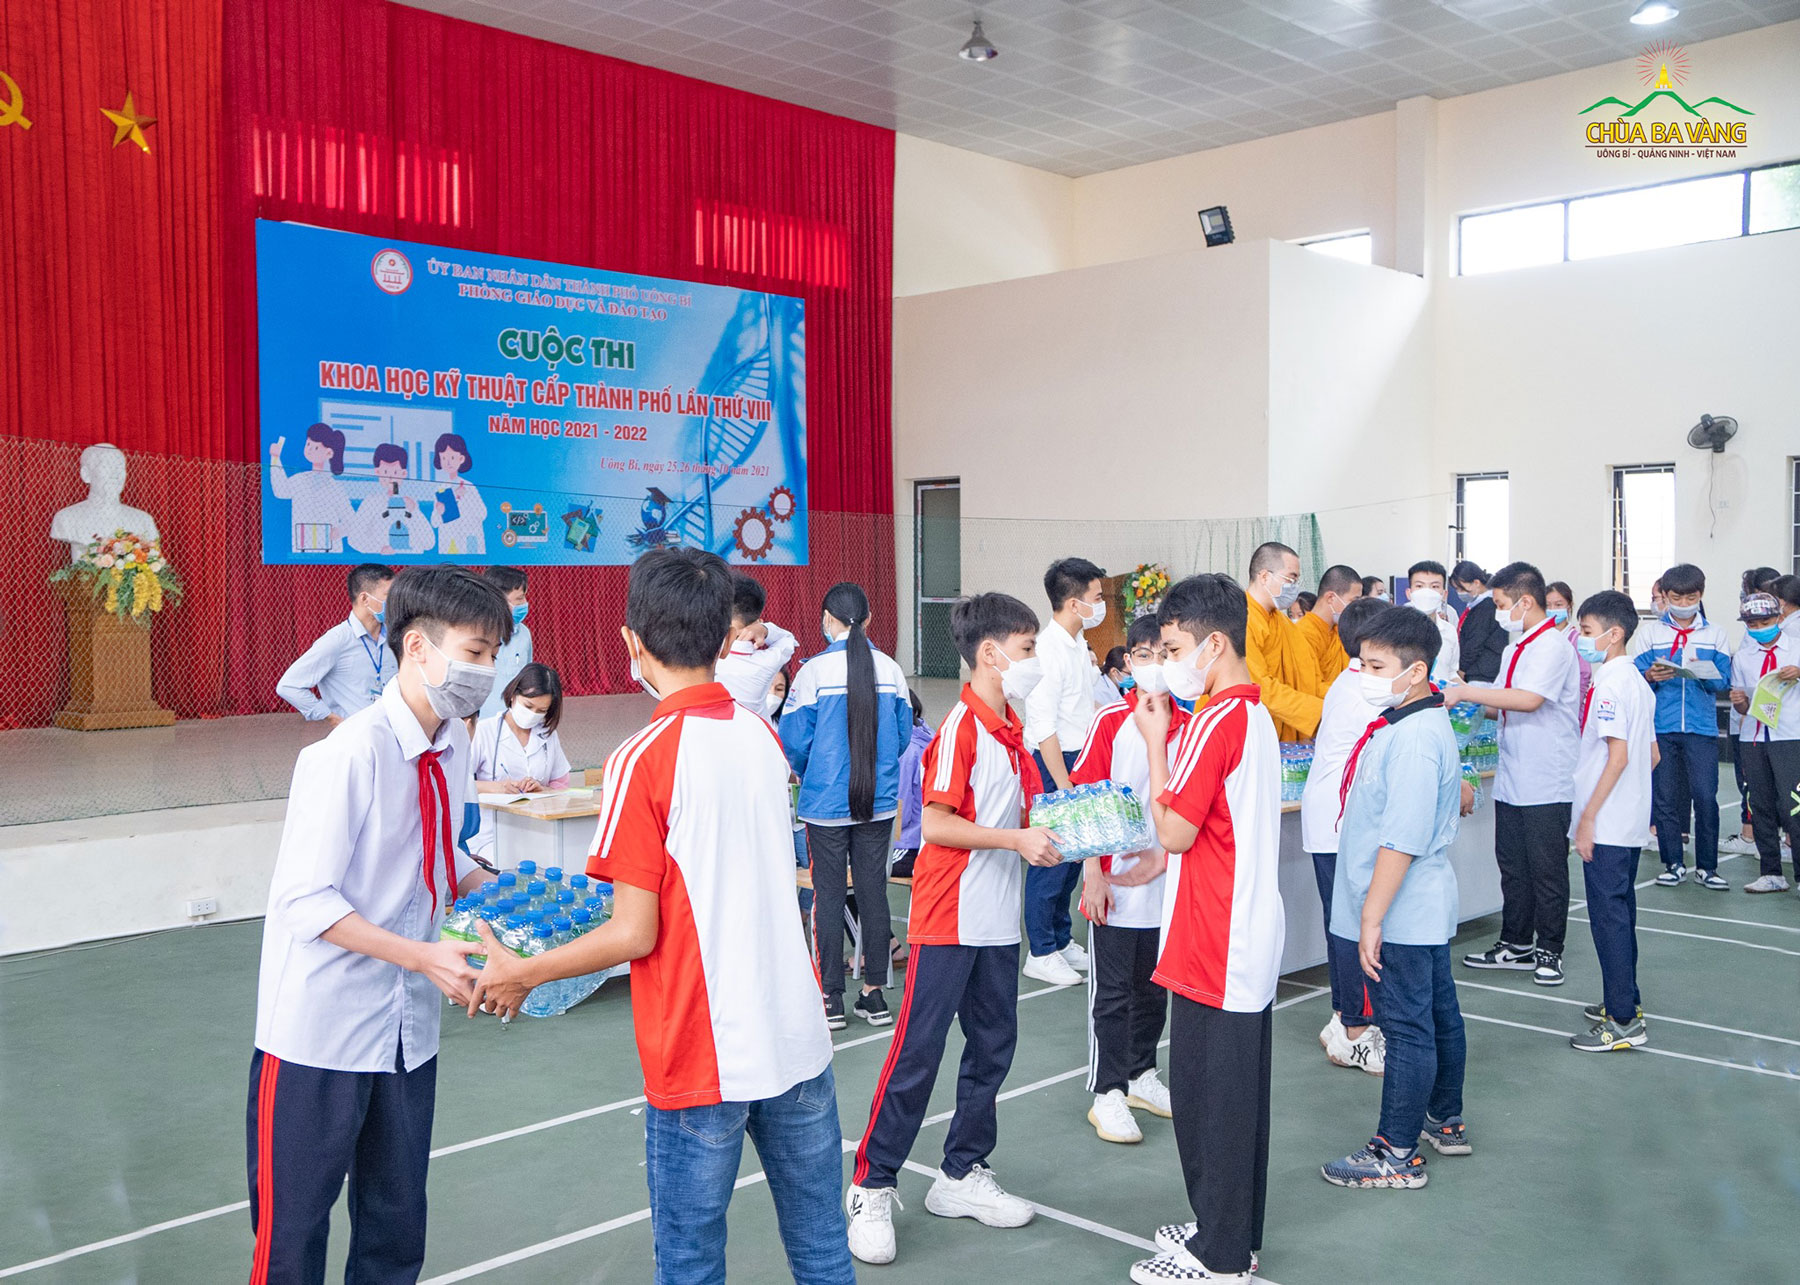 Các em học sinh trường THCS Trần Quốc Toản cùng hỗ trợ nhau chuyển phần quà của chùa Ba Vàng